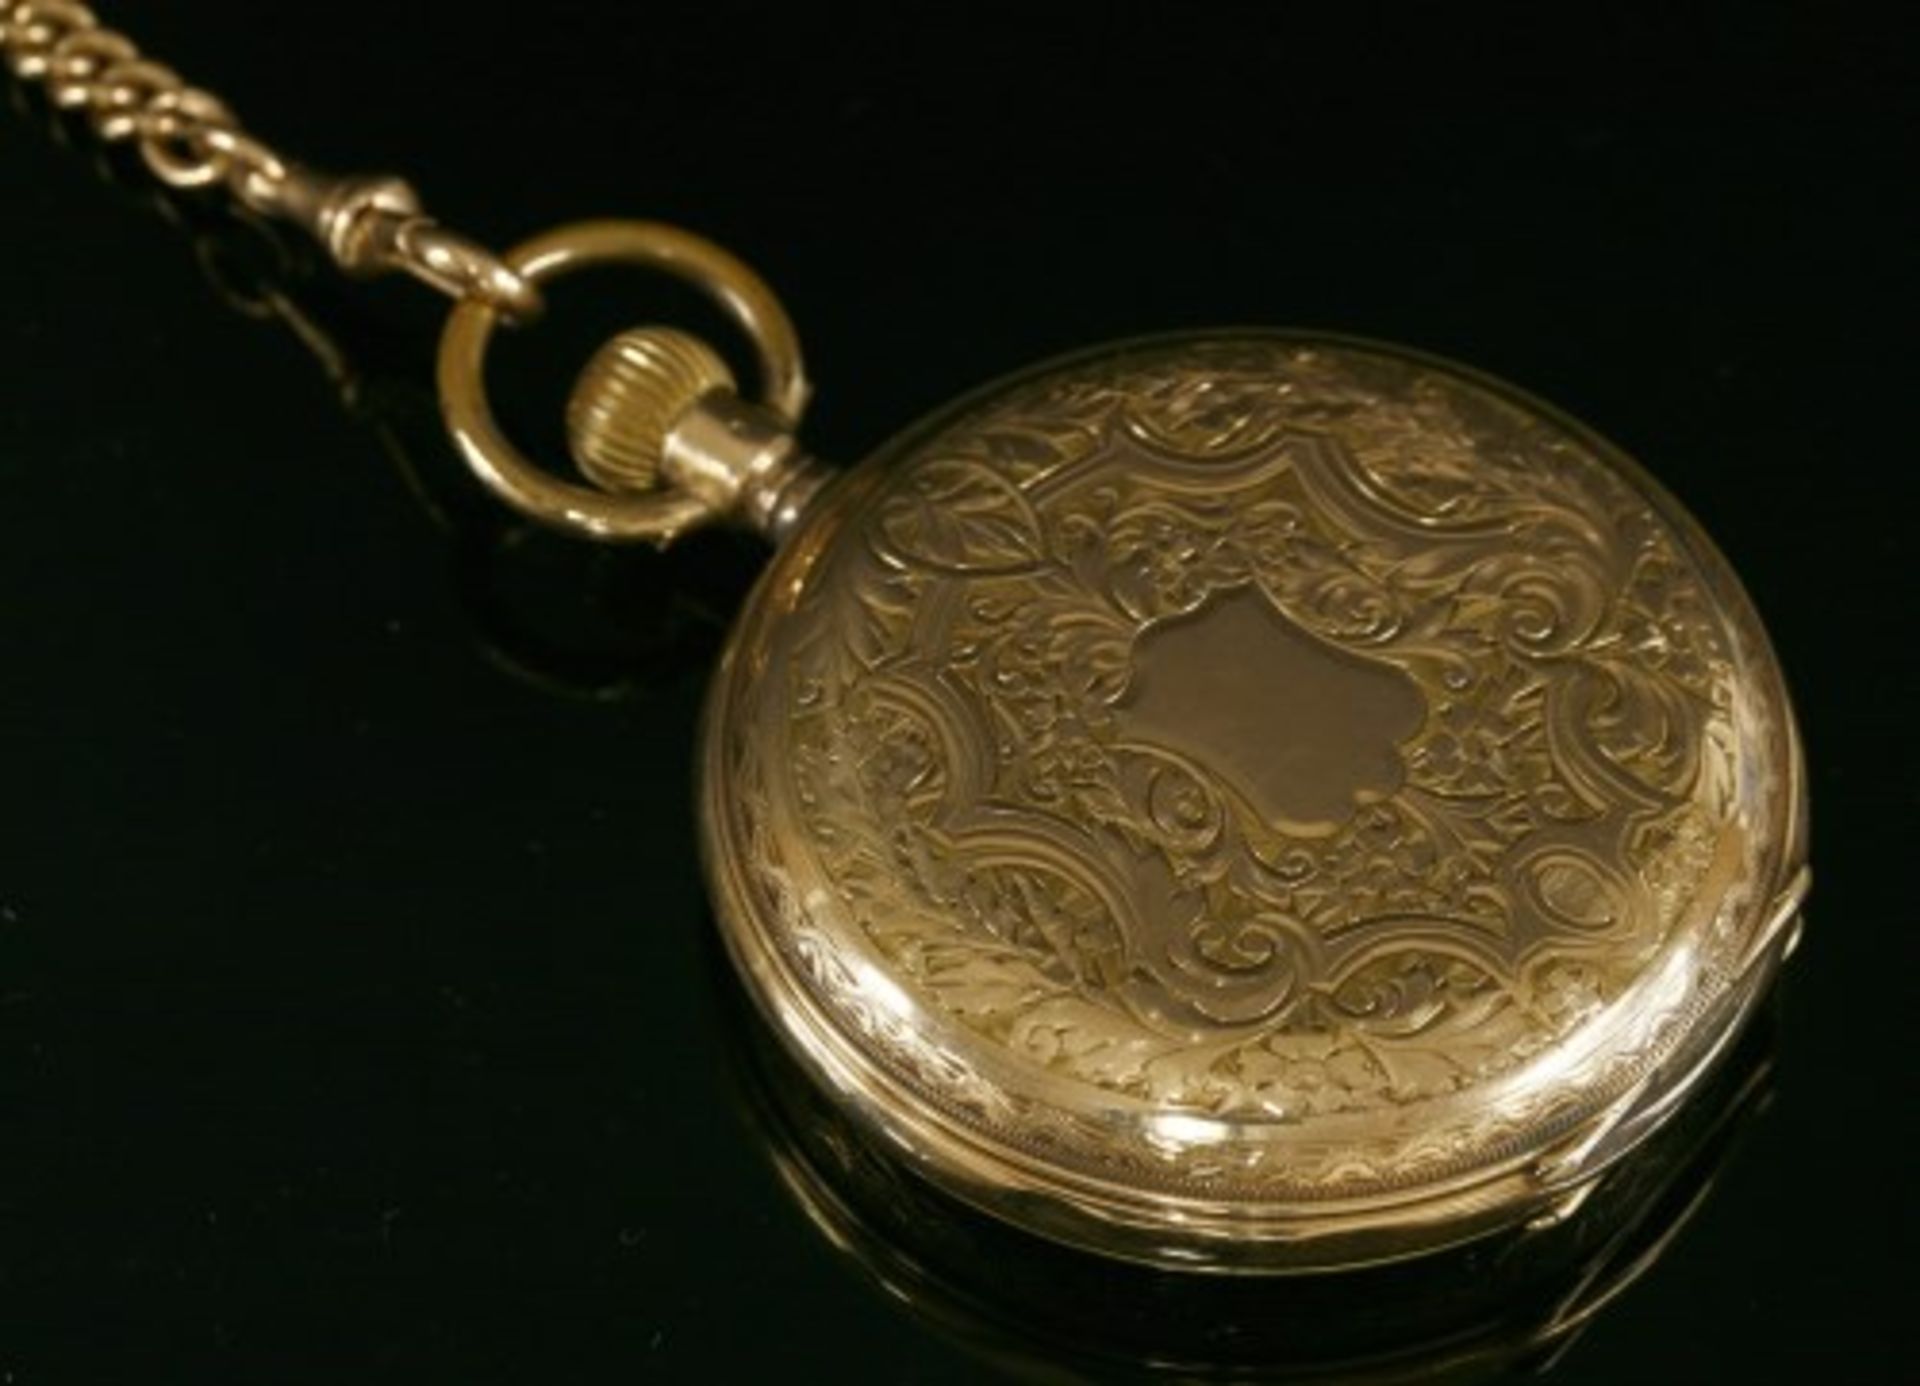 A Swiss gold side wind Hunter pocket watch